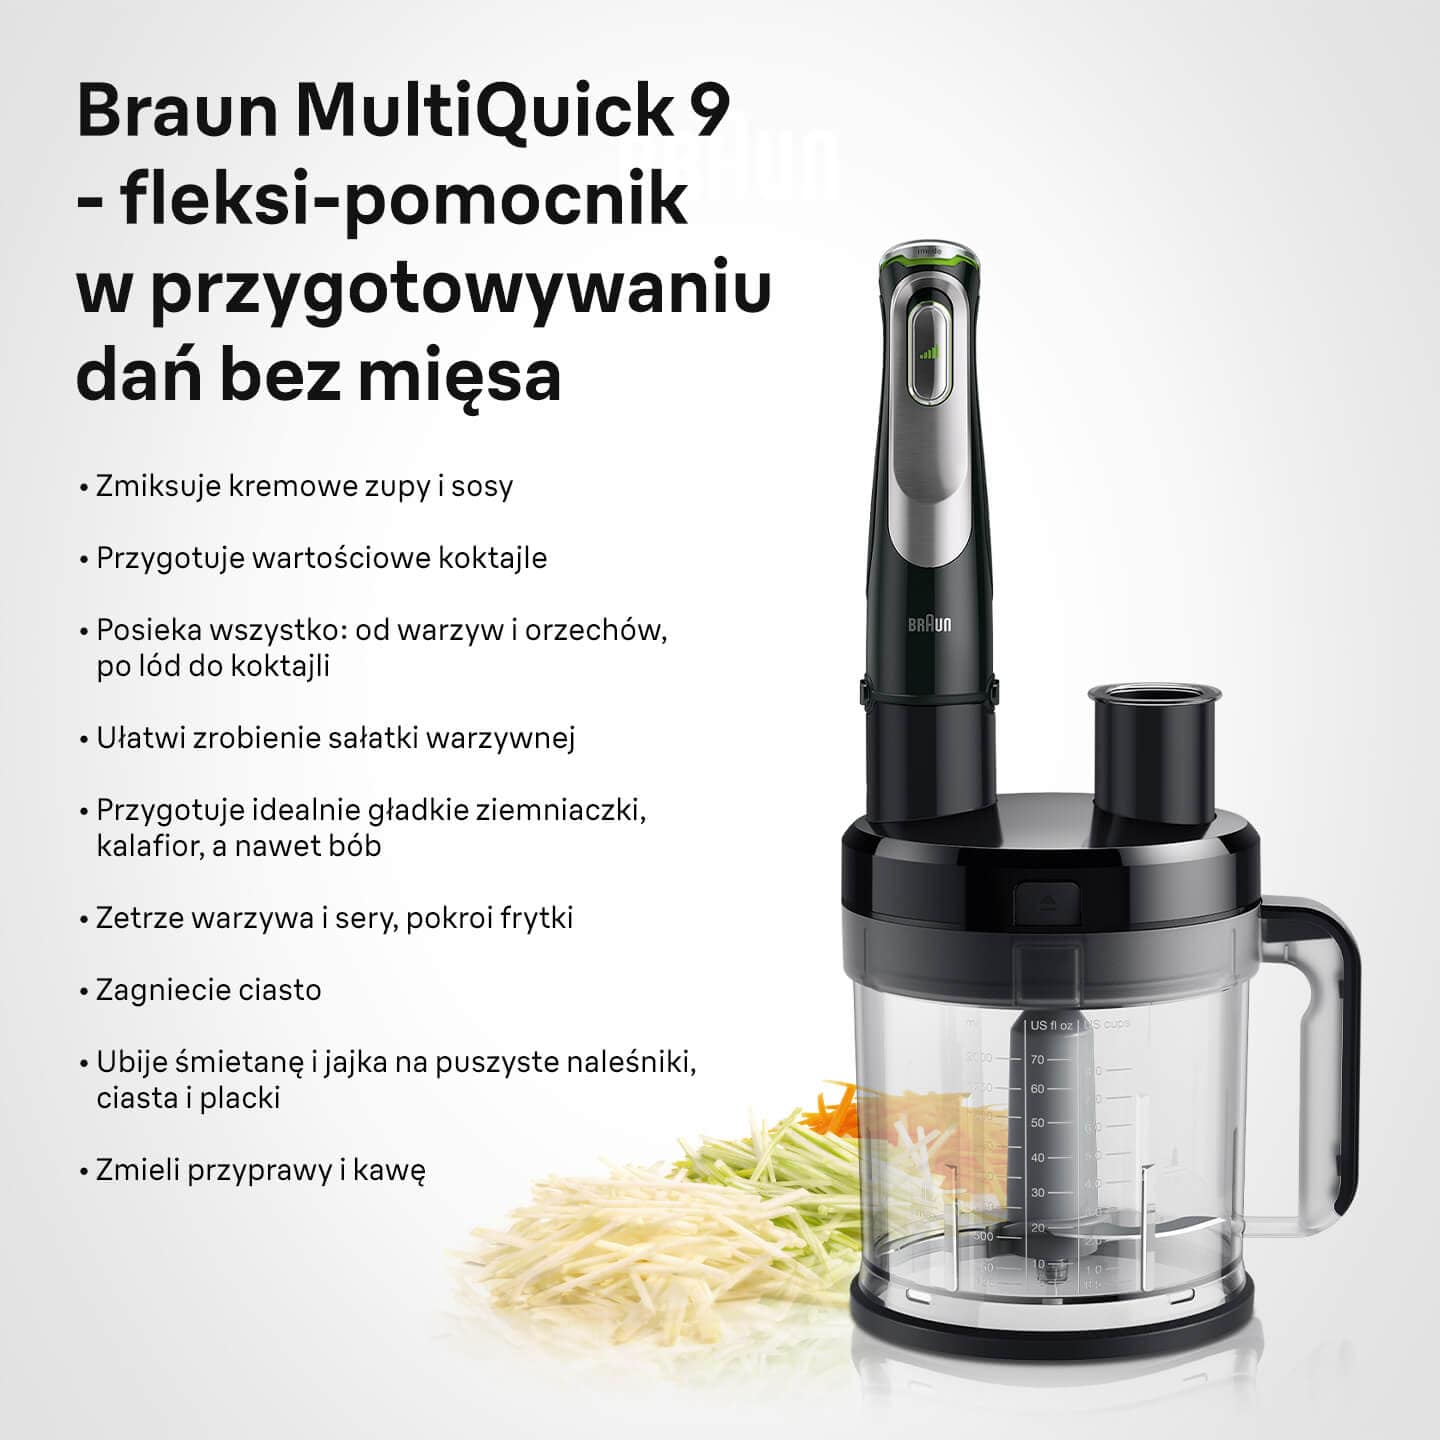 Braun MultiQuick 9 - fleksi-pomocnik w przygotowywaniu dań bez mięsa - infografika